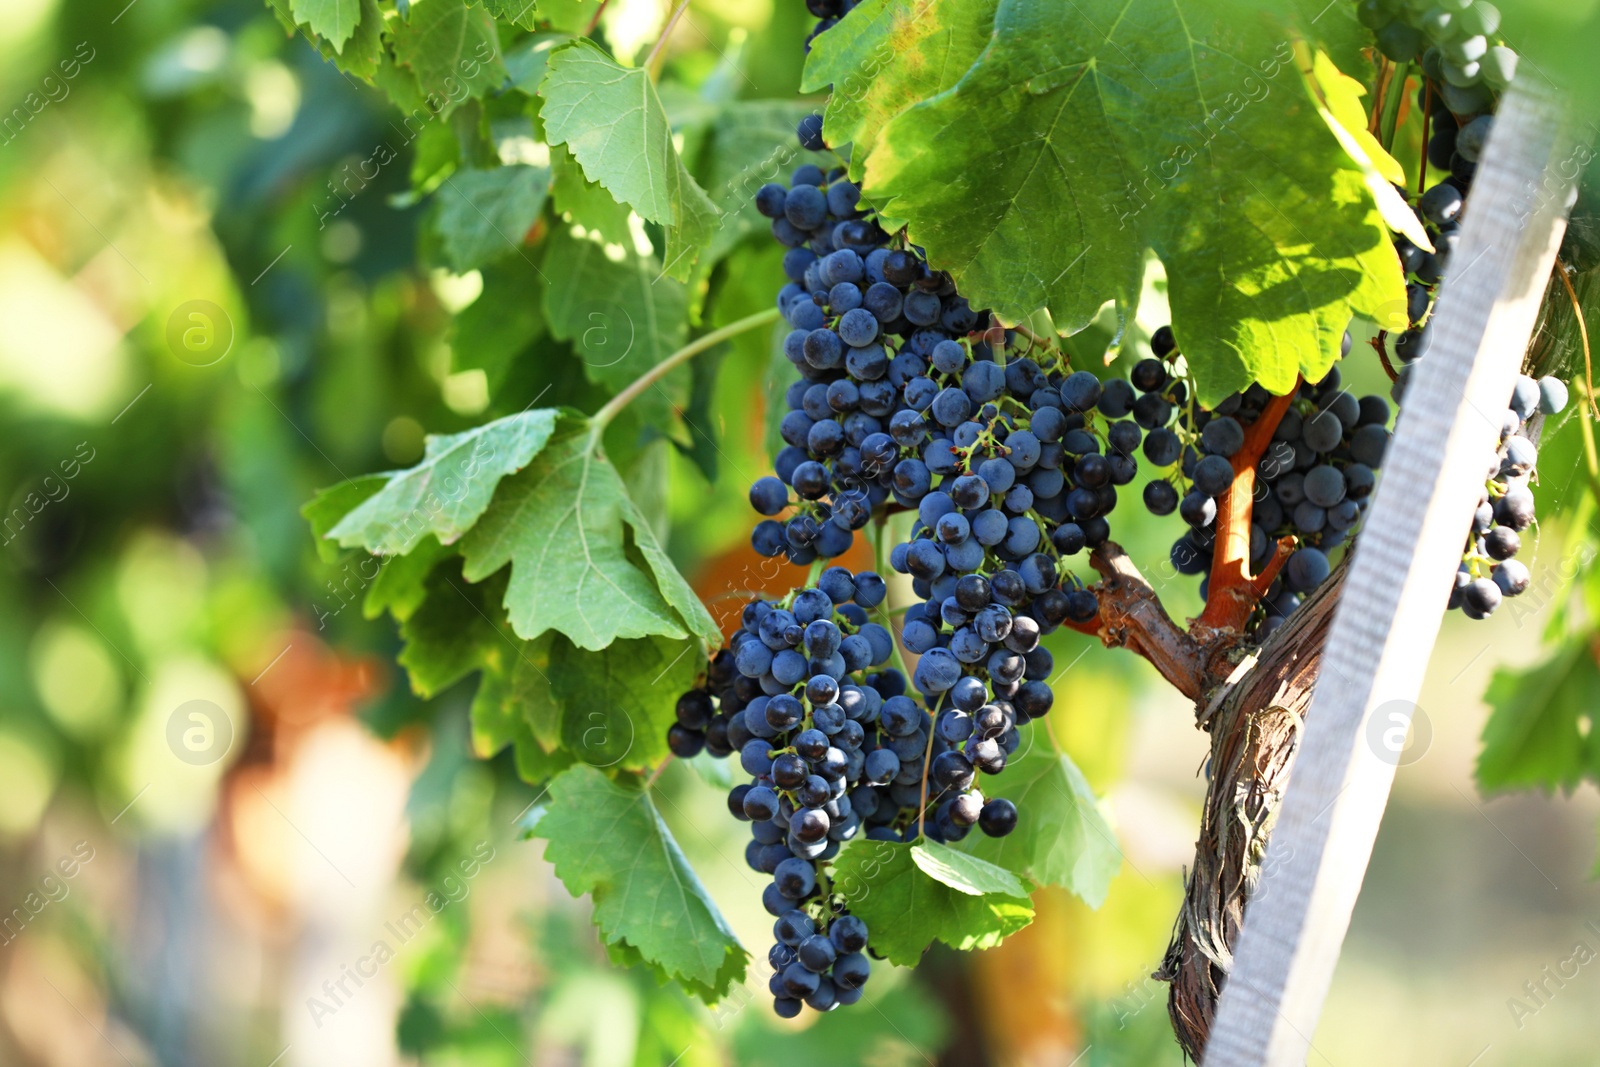 Photo of Fresh ripe juicy grapes growing in vineyard